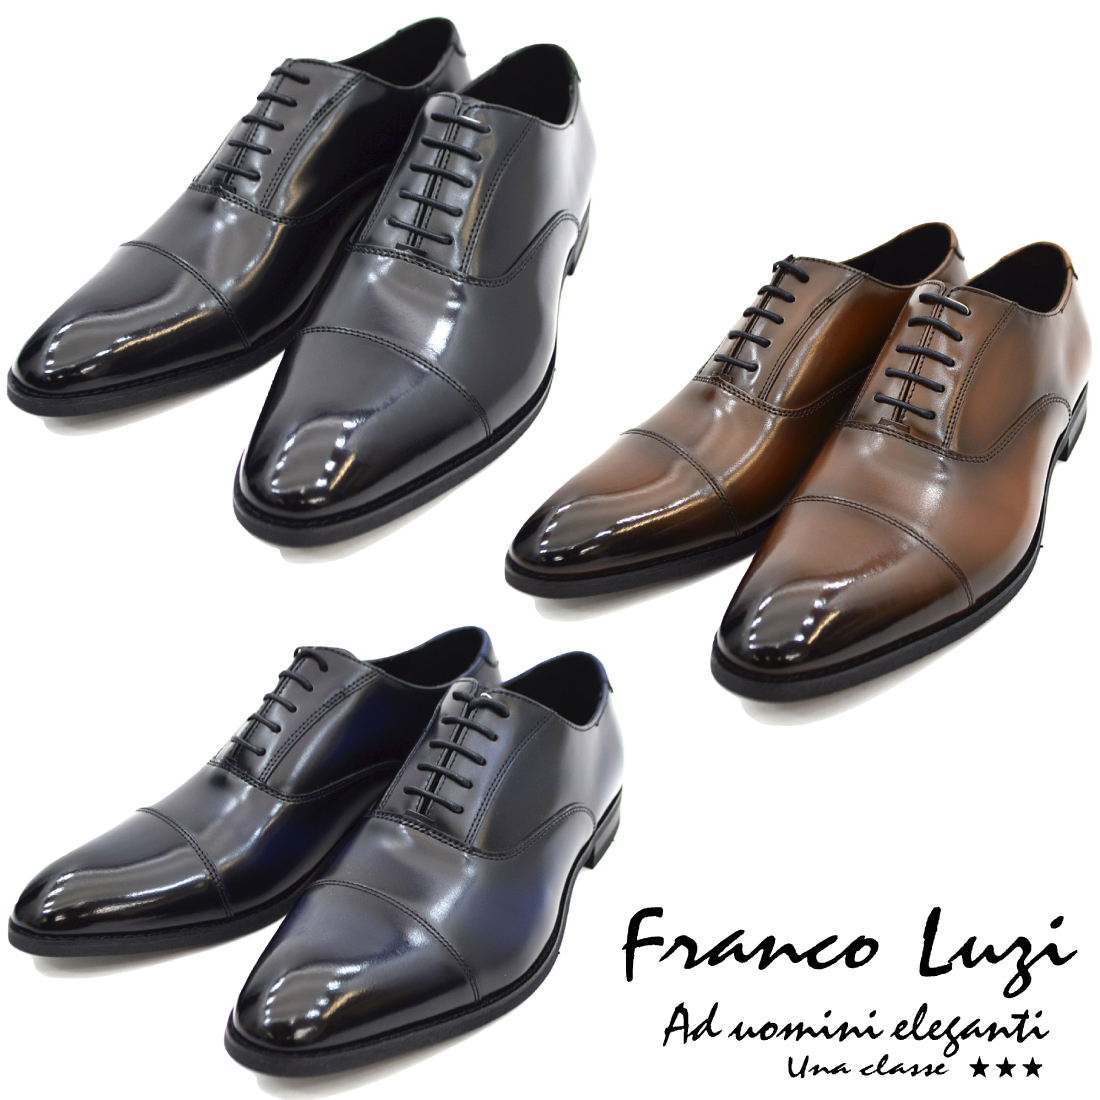 ▲FRANCO LUZI フランコ ルッチ 2001 ビジネスシューズ ストレートチップ 紳士靴 革靴 メンズ ブラウン 茶 26.5cm (0910010550-br-s265)